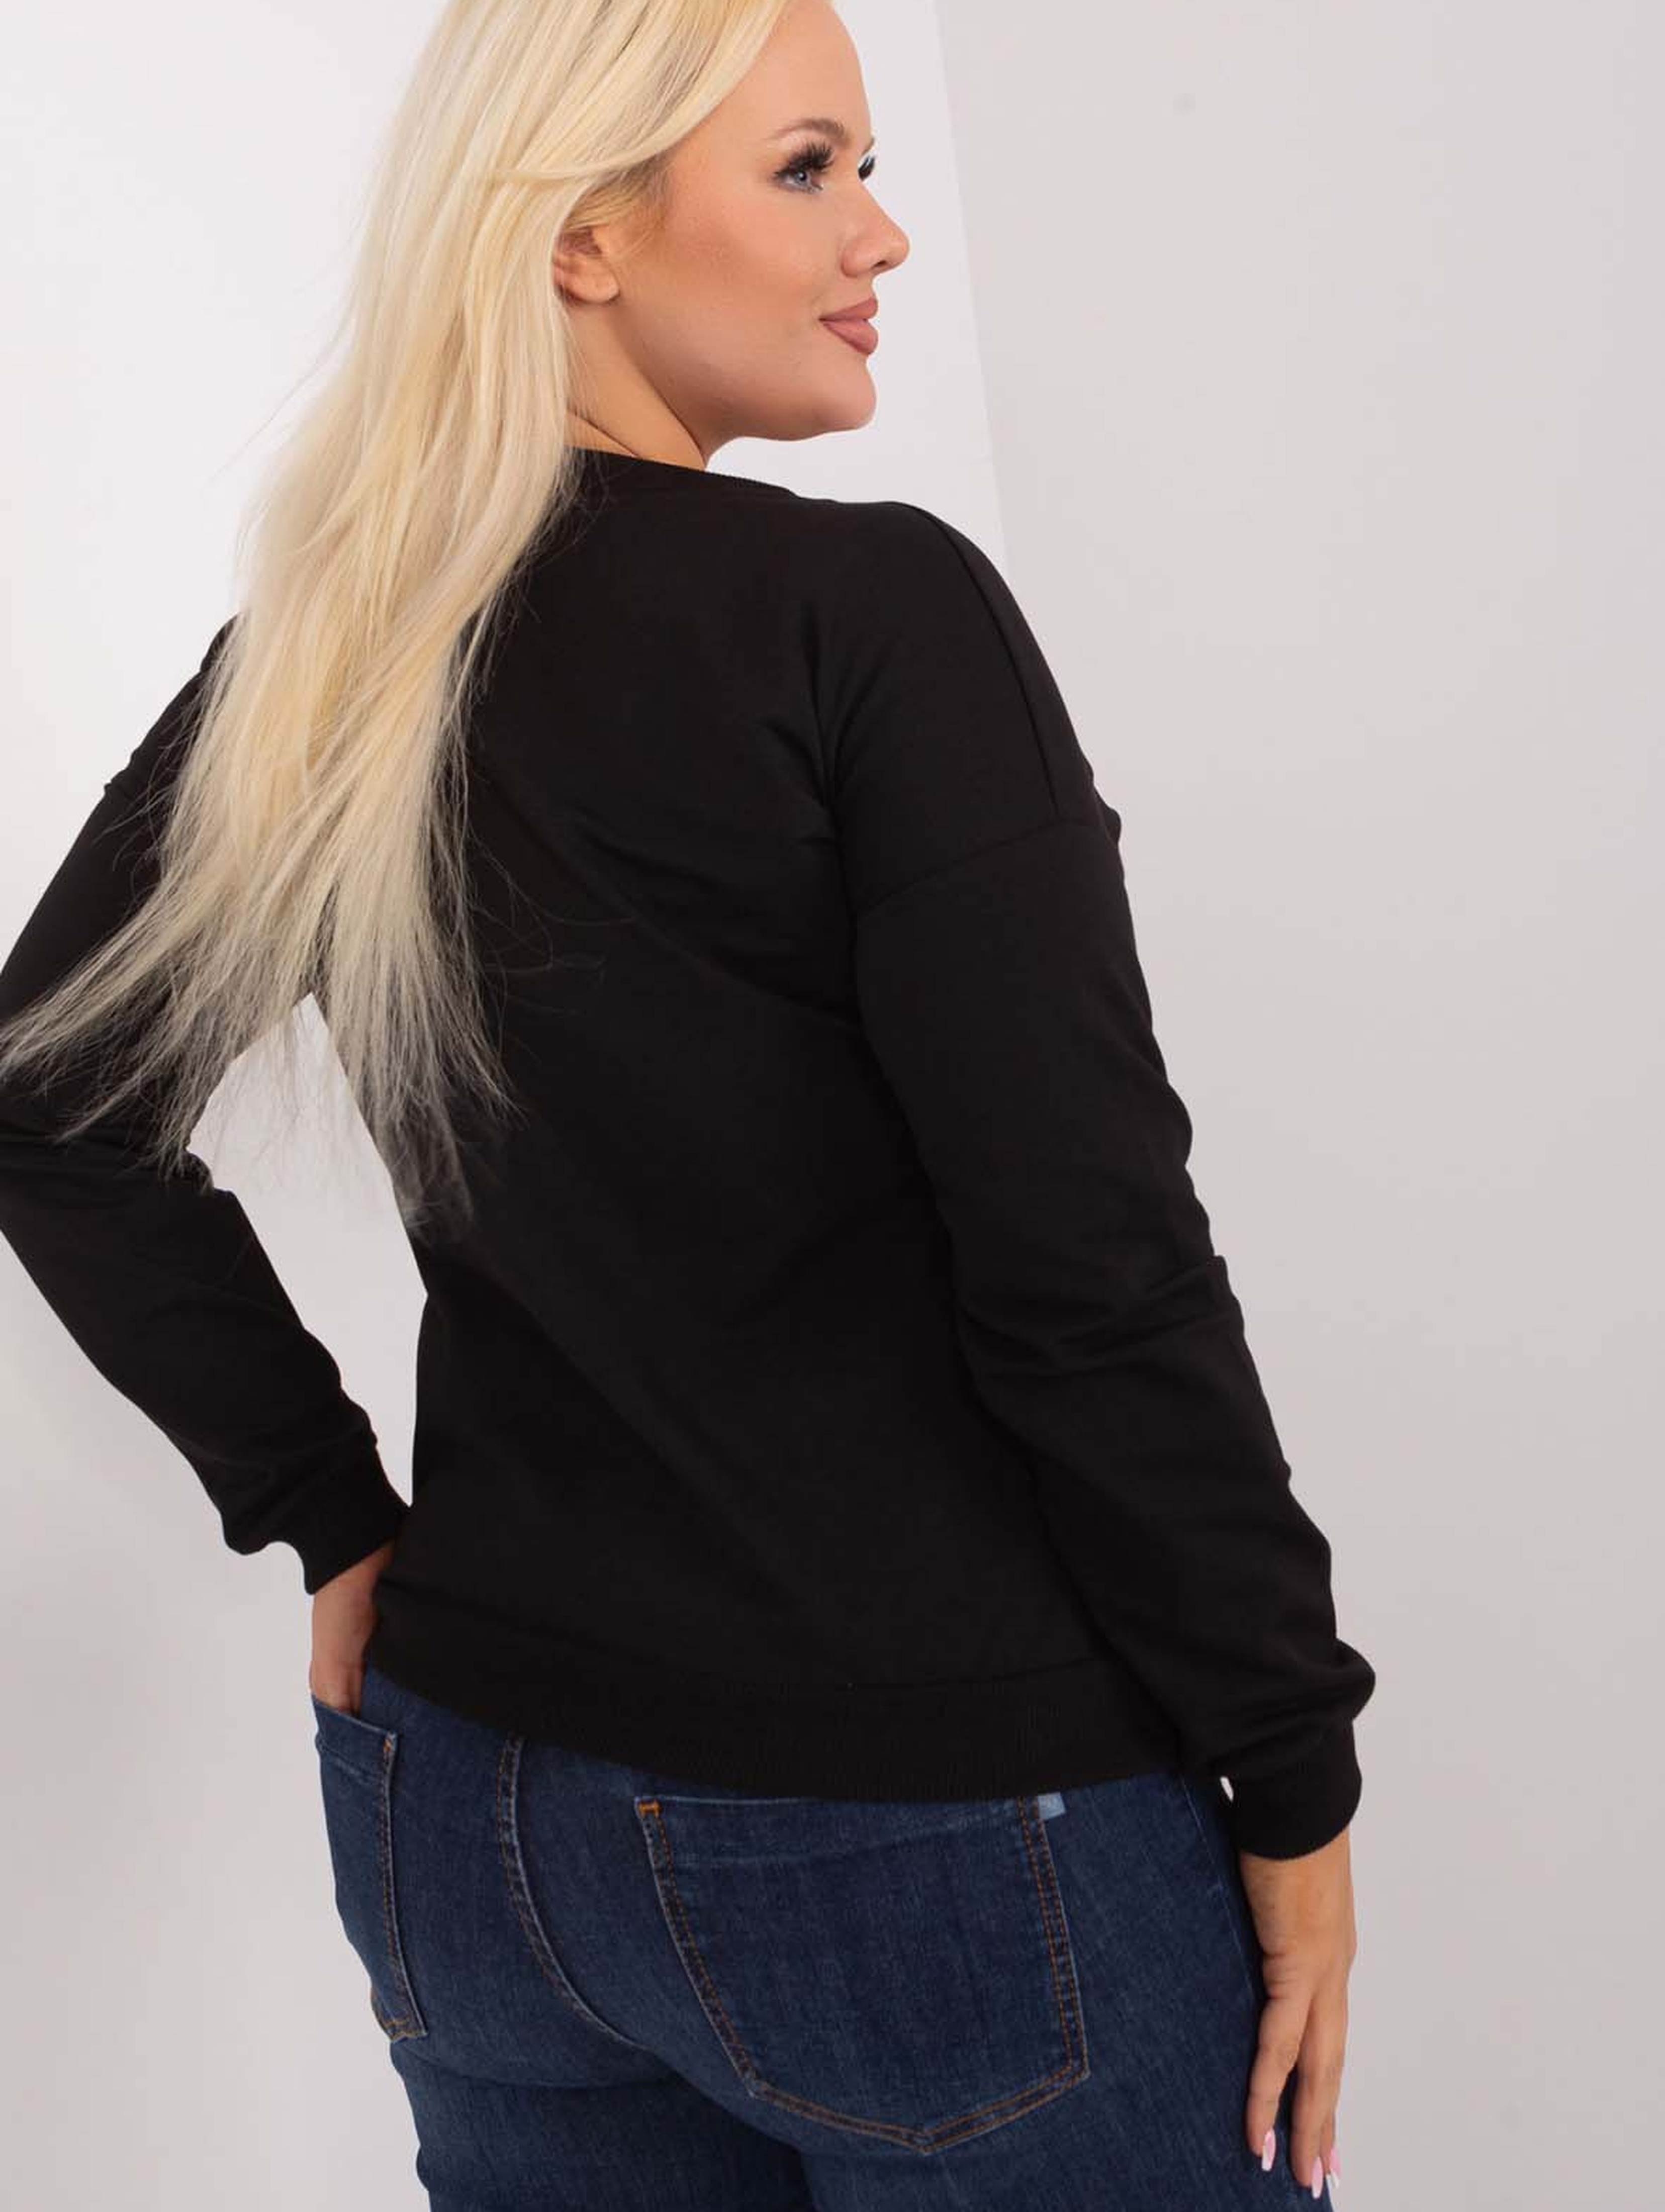 Czarna casualowa bluzka damska plus size z literą M